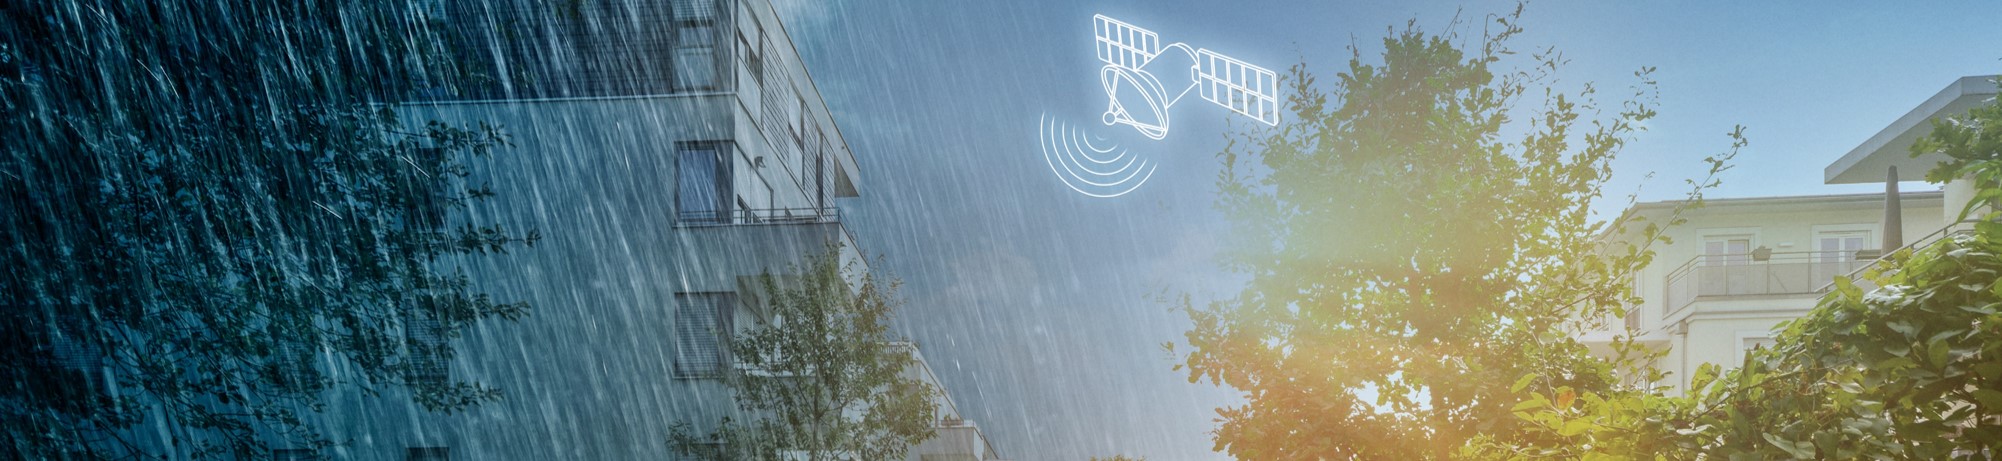 Queen University i Zamek Hillsborough przykładami zastosowania systemu inteligentnego zagospodarowania wody deszczowej Wavin StormHarvester